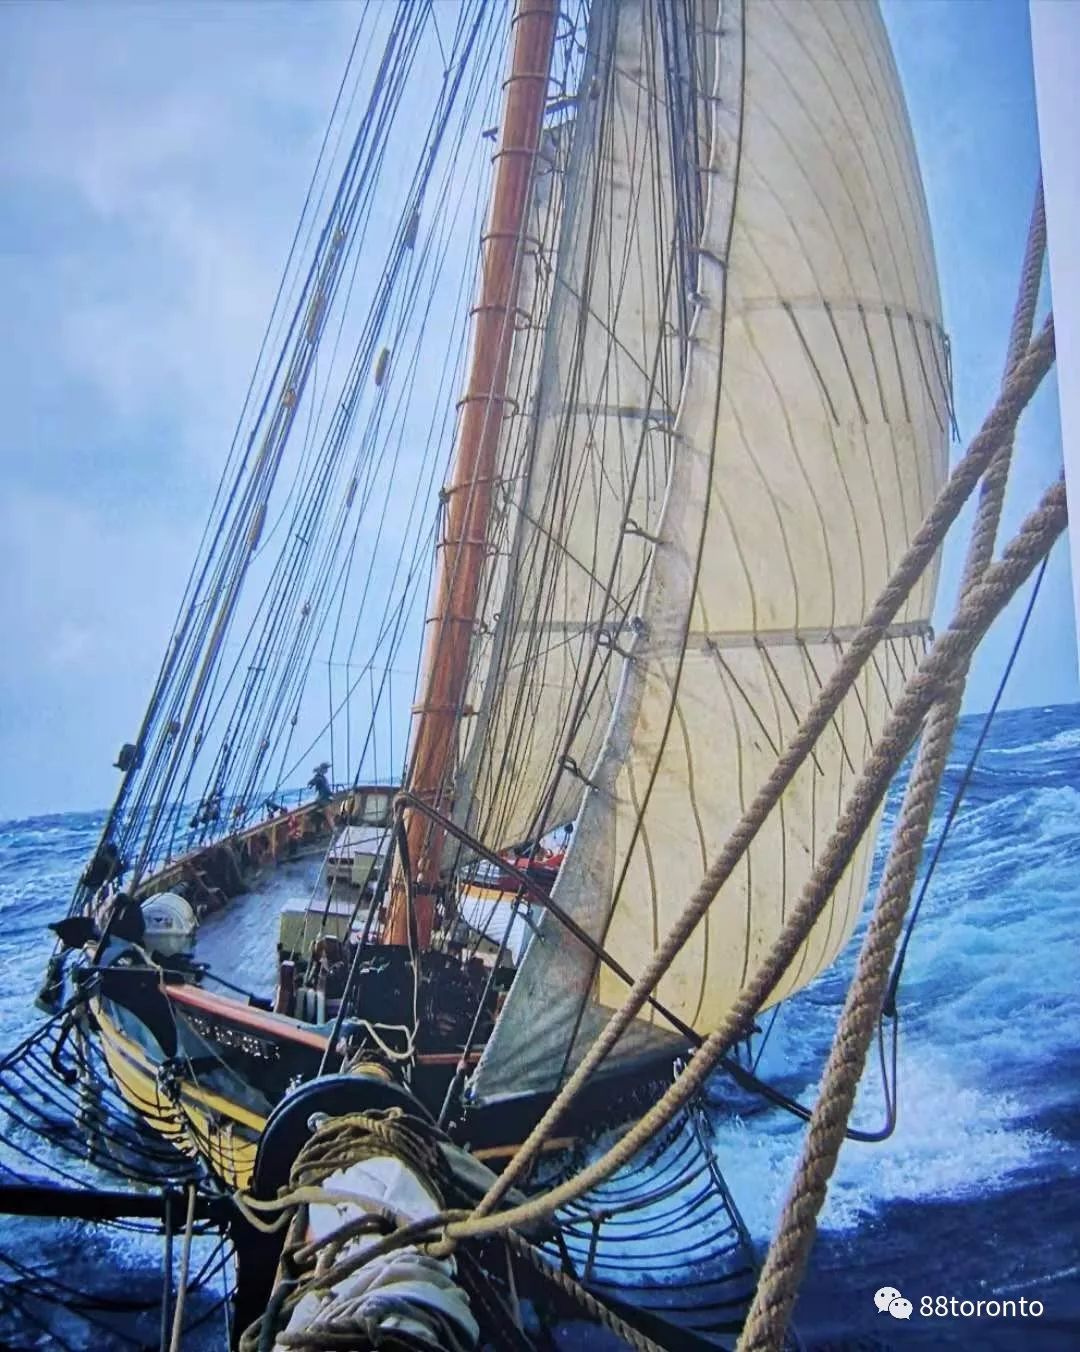 蓝鼻子快船来到多伦多,古帆船,海盗船也赶来了